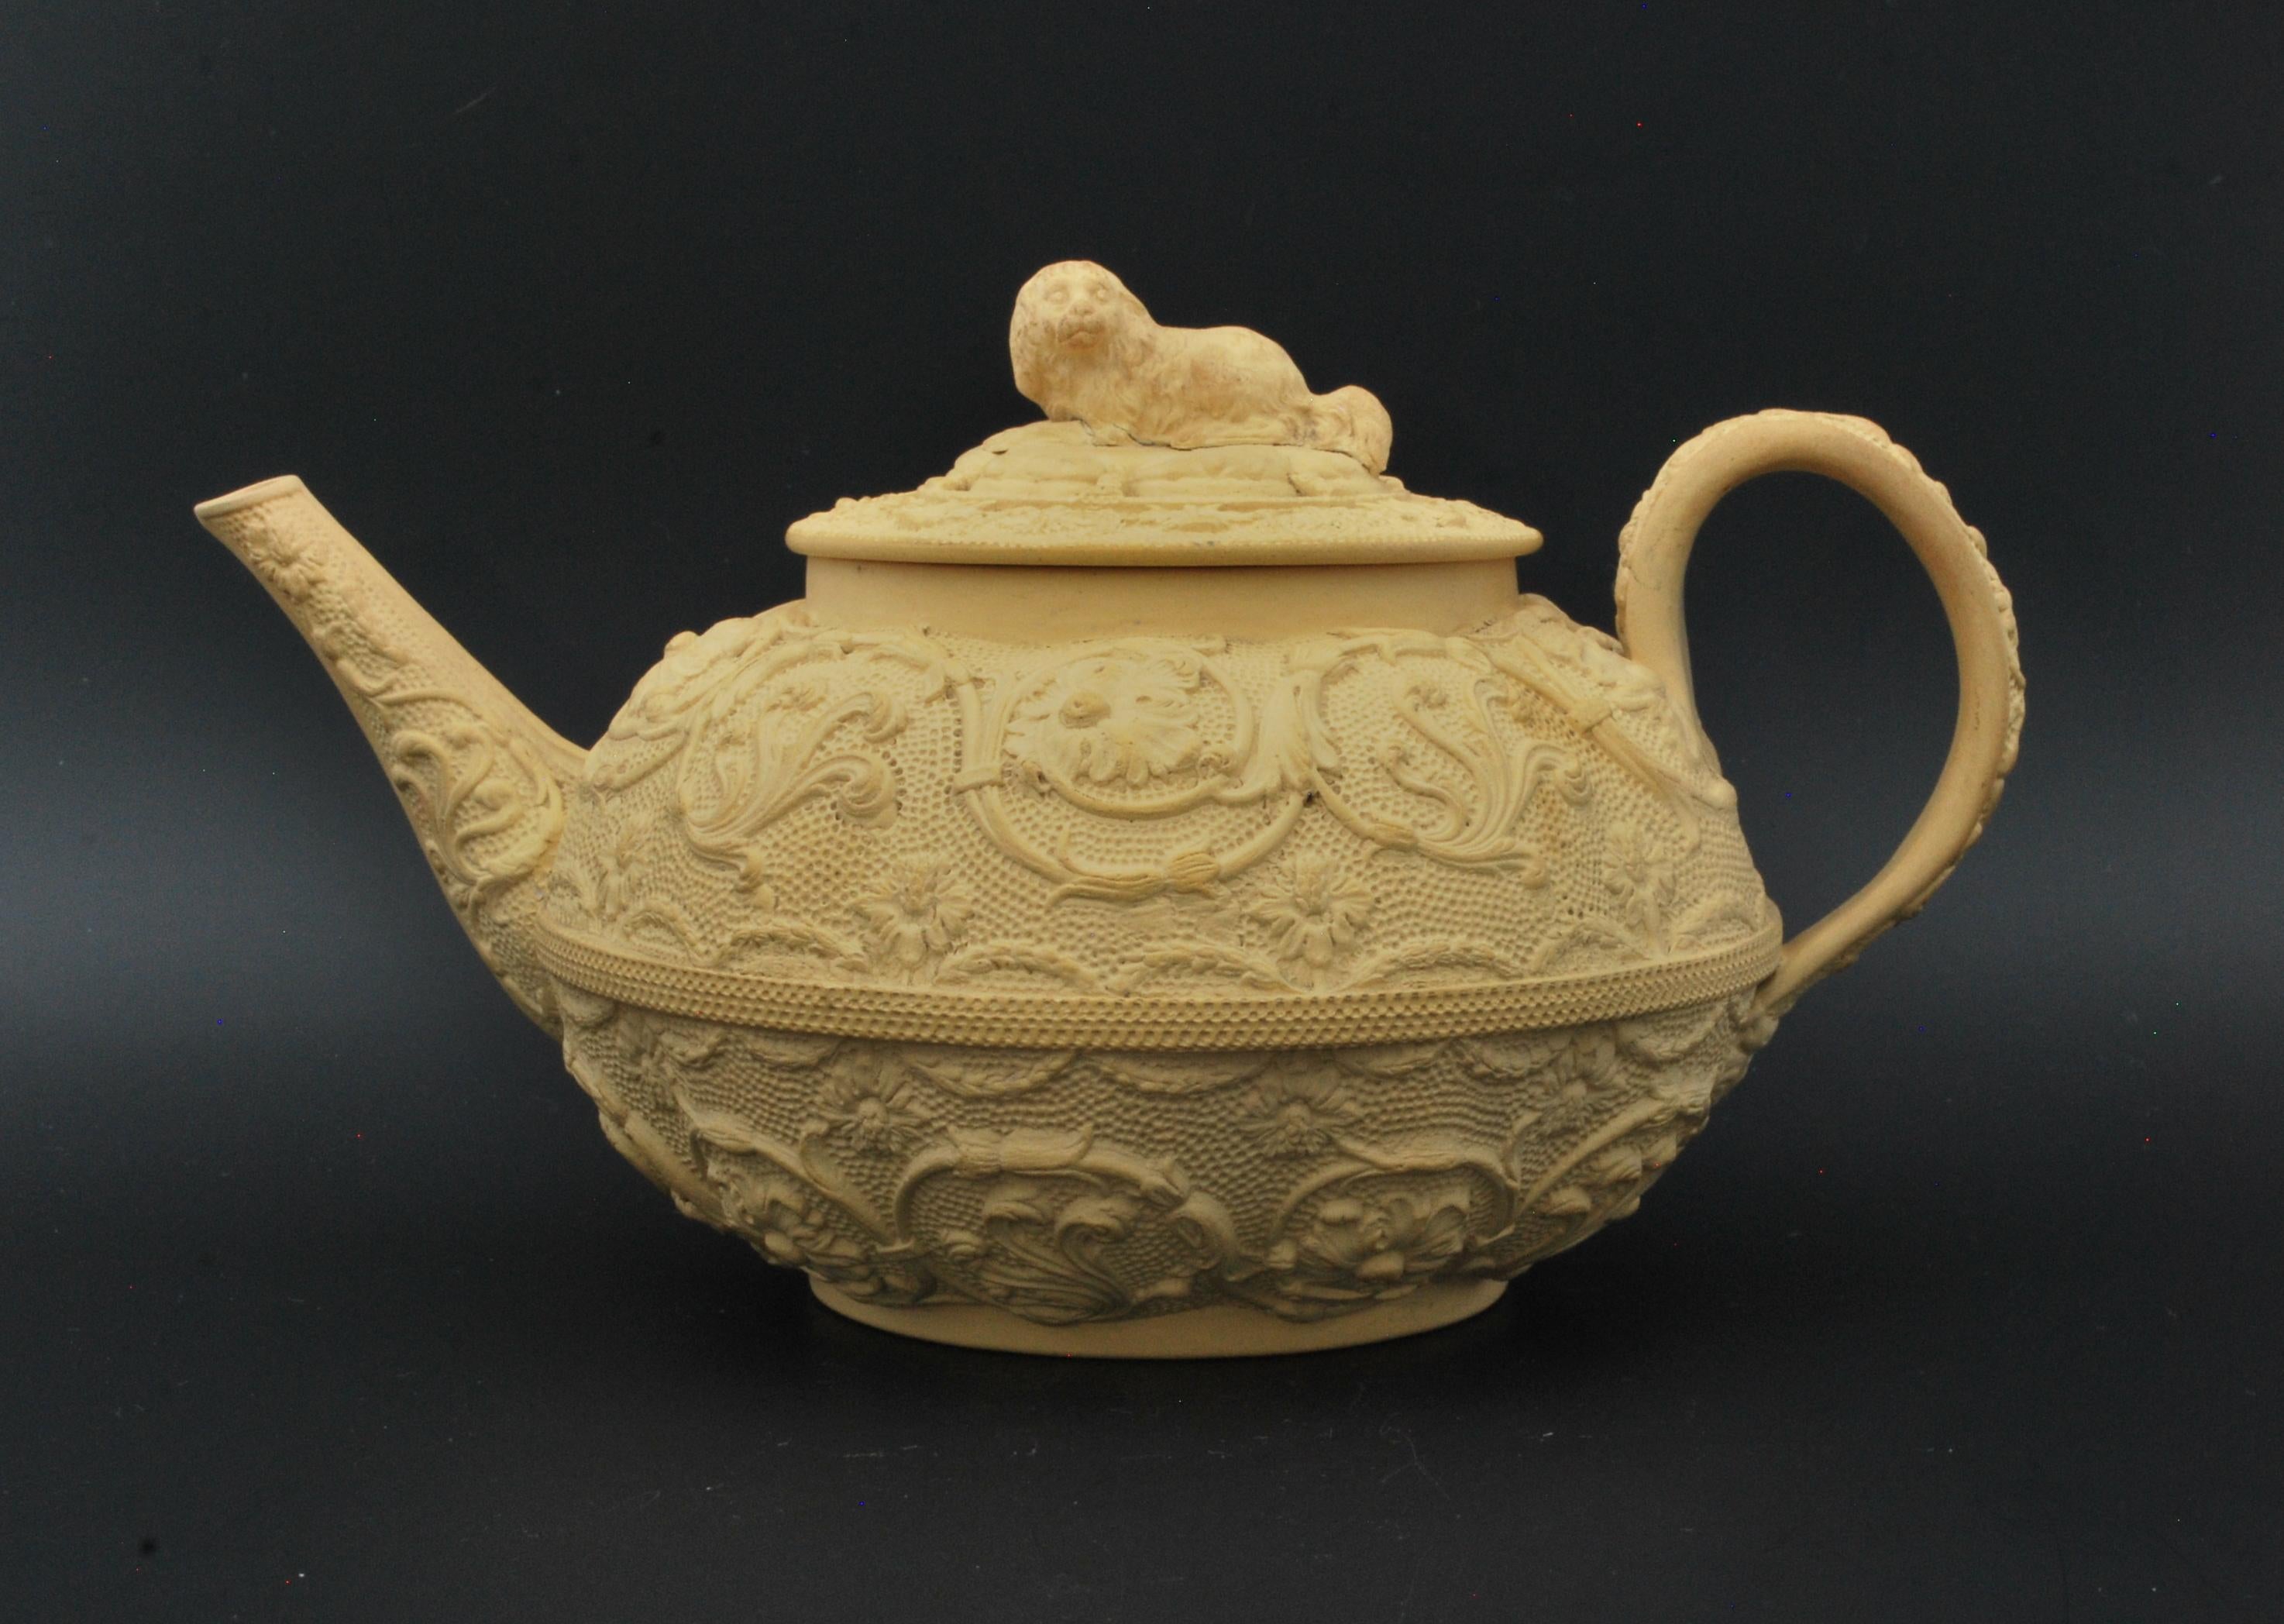 Unglasierte, ovale Teekanne aus Steingut mit arabeskem Dekor und einem Spaniel.

Wedgwood Caneware ist eine Art von Keramik, die erstmals von der Firma Wedgwood im späten 18. Jahrhundert hergestellt wurde. Es wurde 